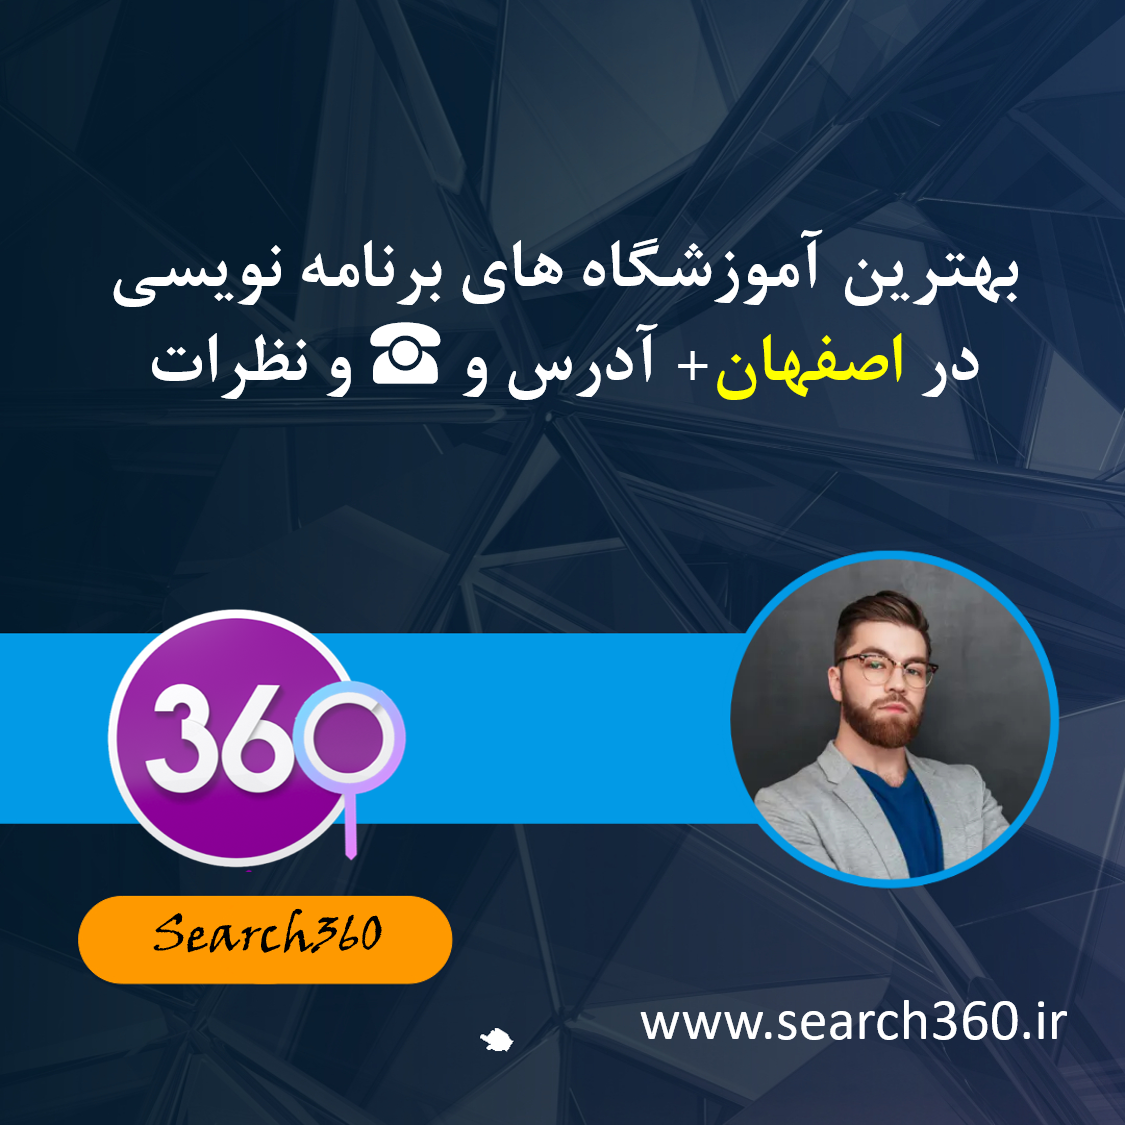 بهترین آموزشگاه های برنامه نویسی در اصفهان با آدرس و ☎️ و نظرات